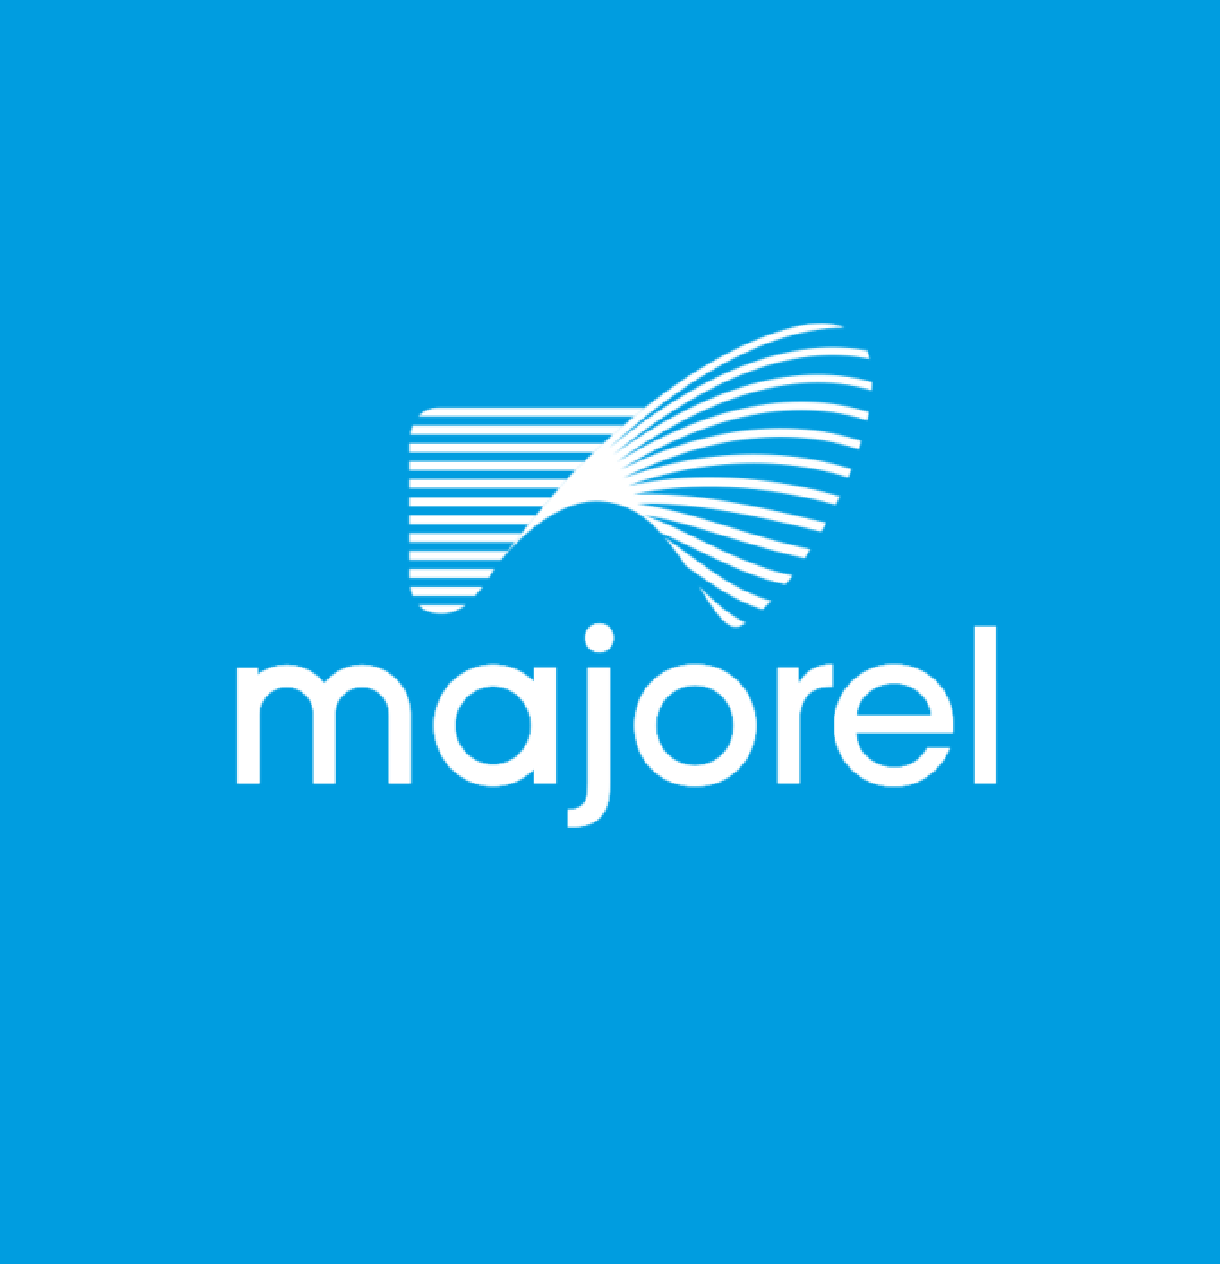 Majorel Egypt company